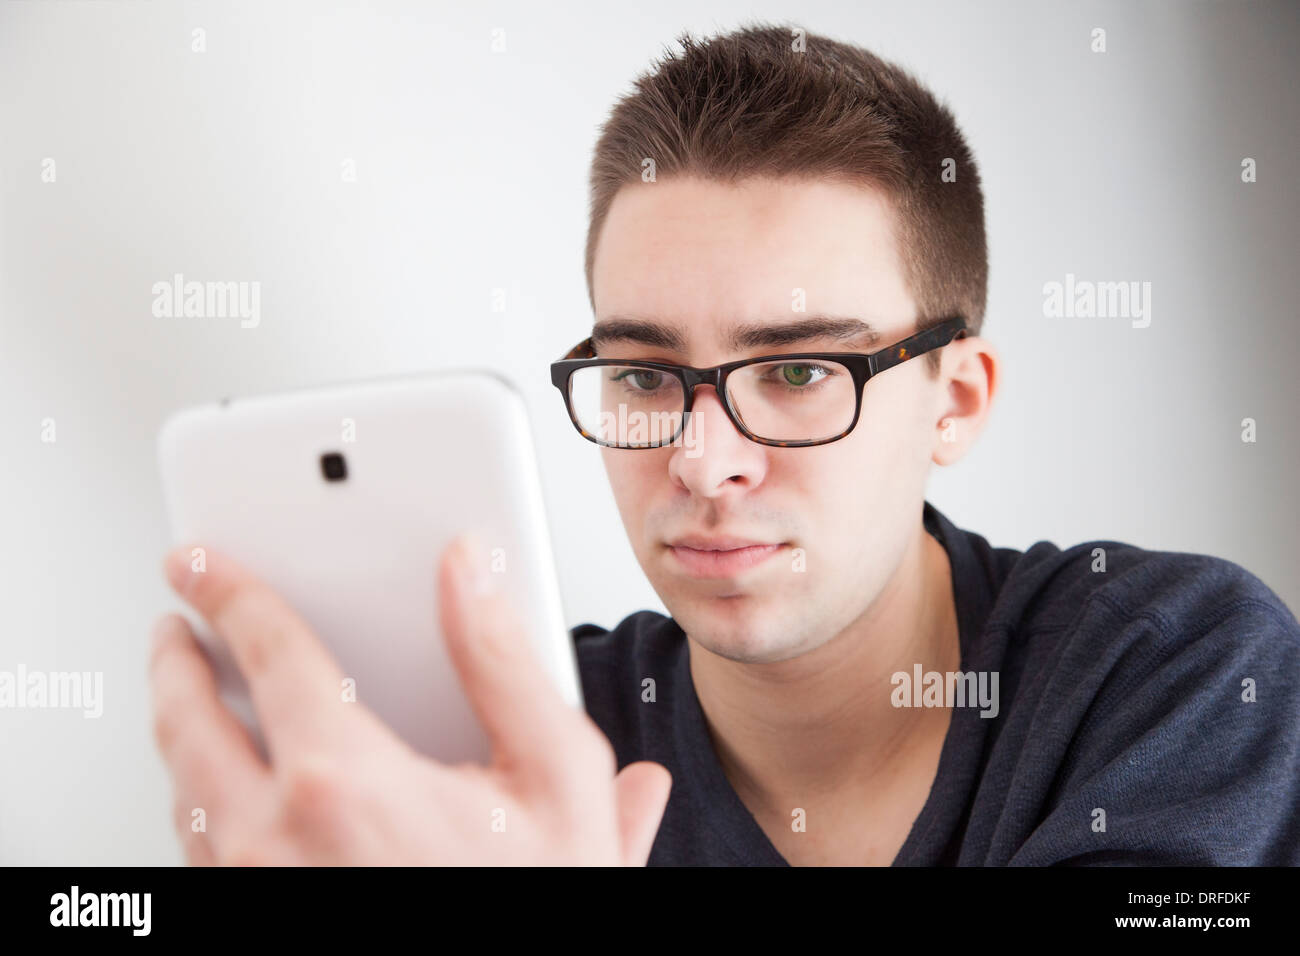 Gut aussehender junger Mann mit Brille, hält eine weiße digitale-Tablette. Ernsten Ausdruck. Stockfoto